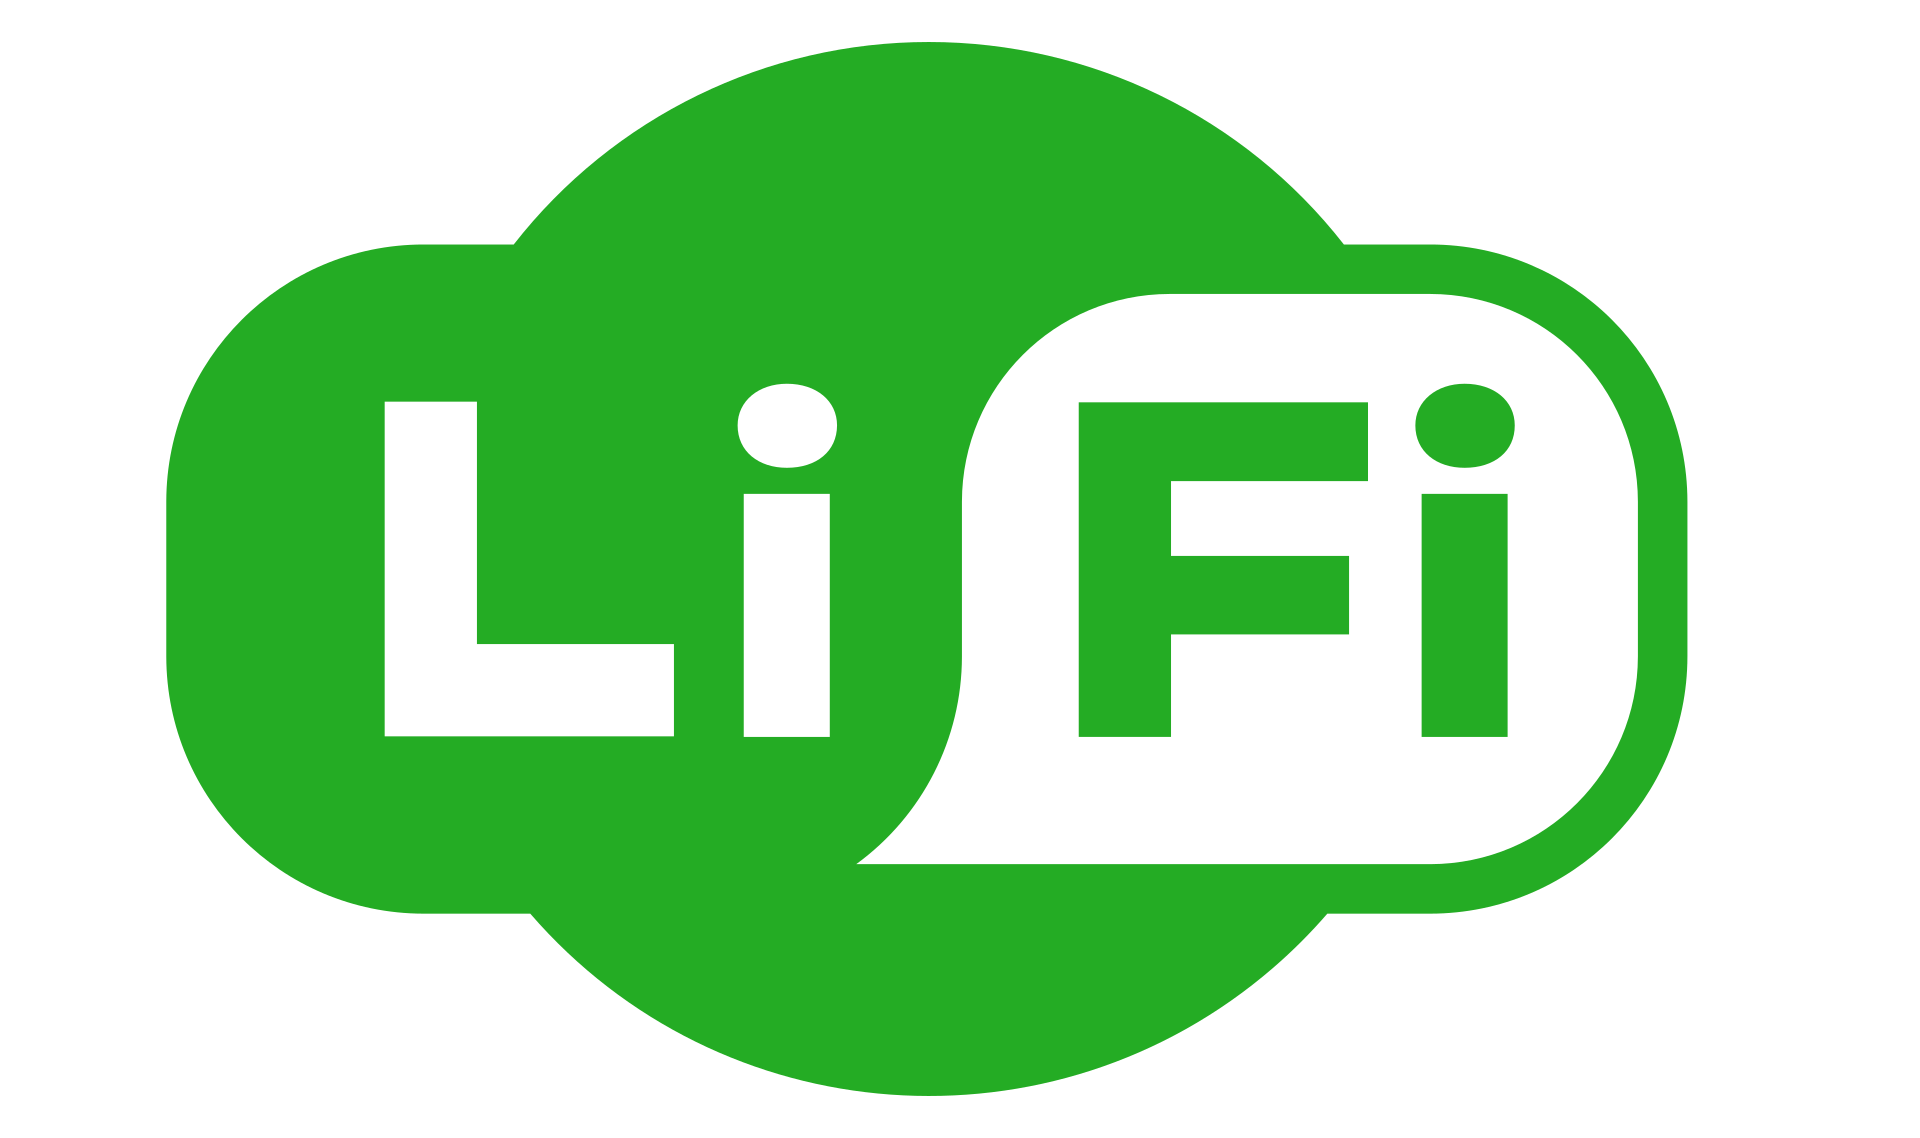 Li-Fi - Light Fidelity - Двунаправленная высокоскоростная беспроводная коммуникационная технология